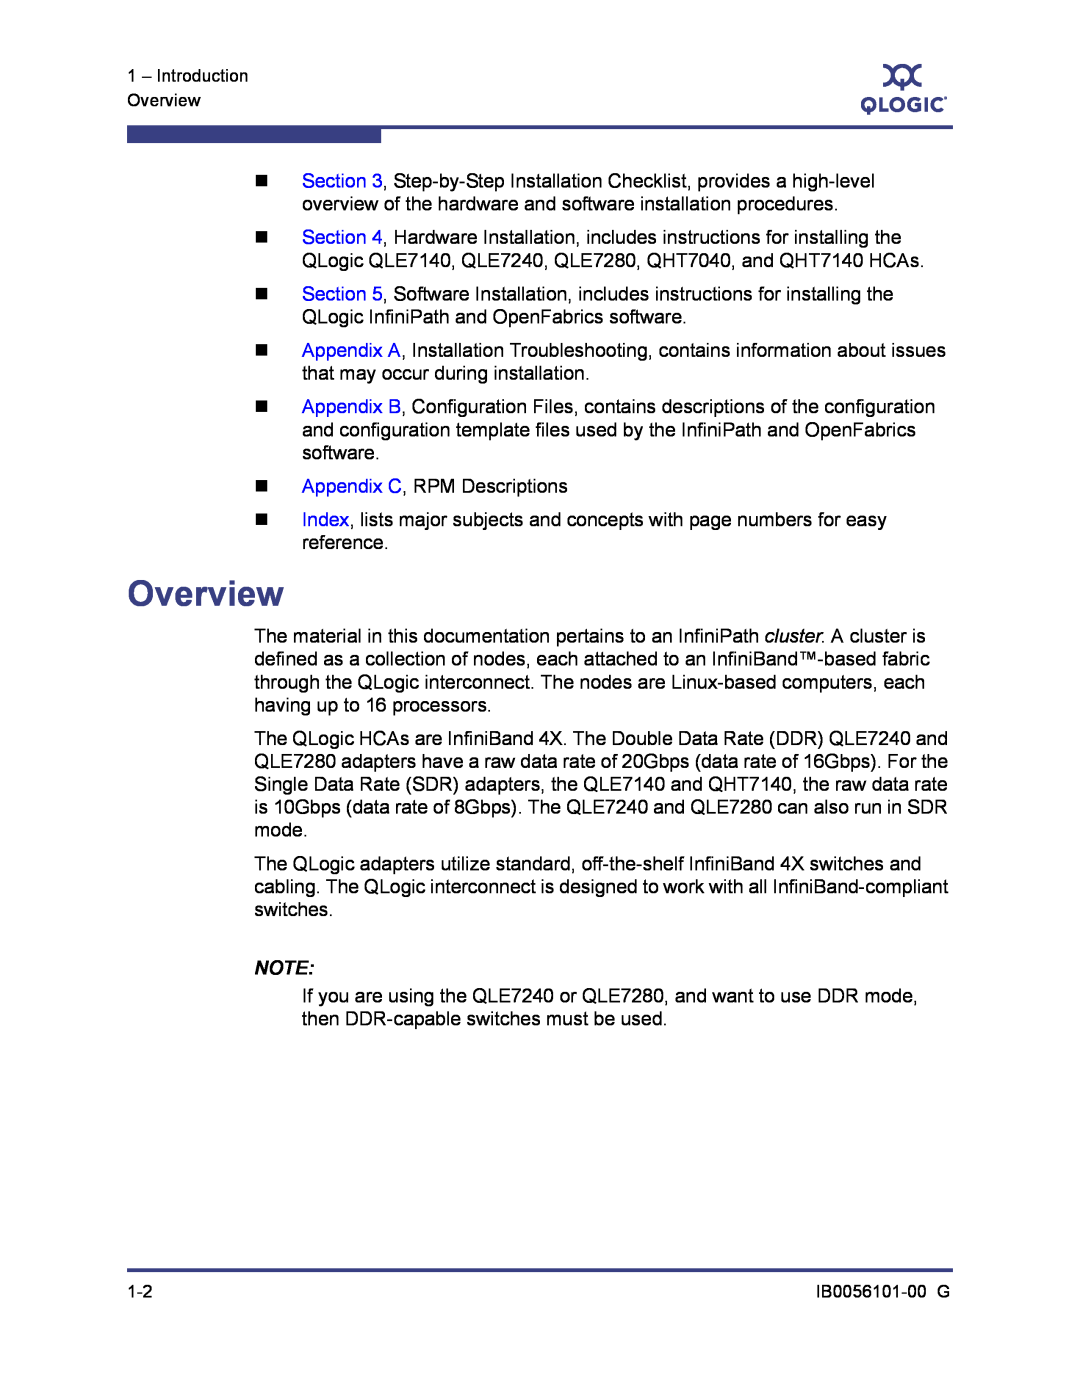 Q-Logic IB0056101-00 G manual Overview 